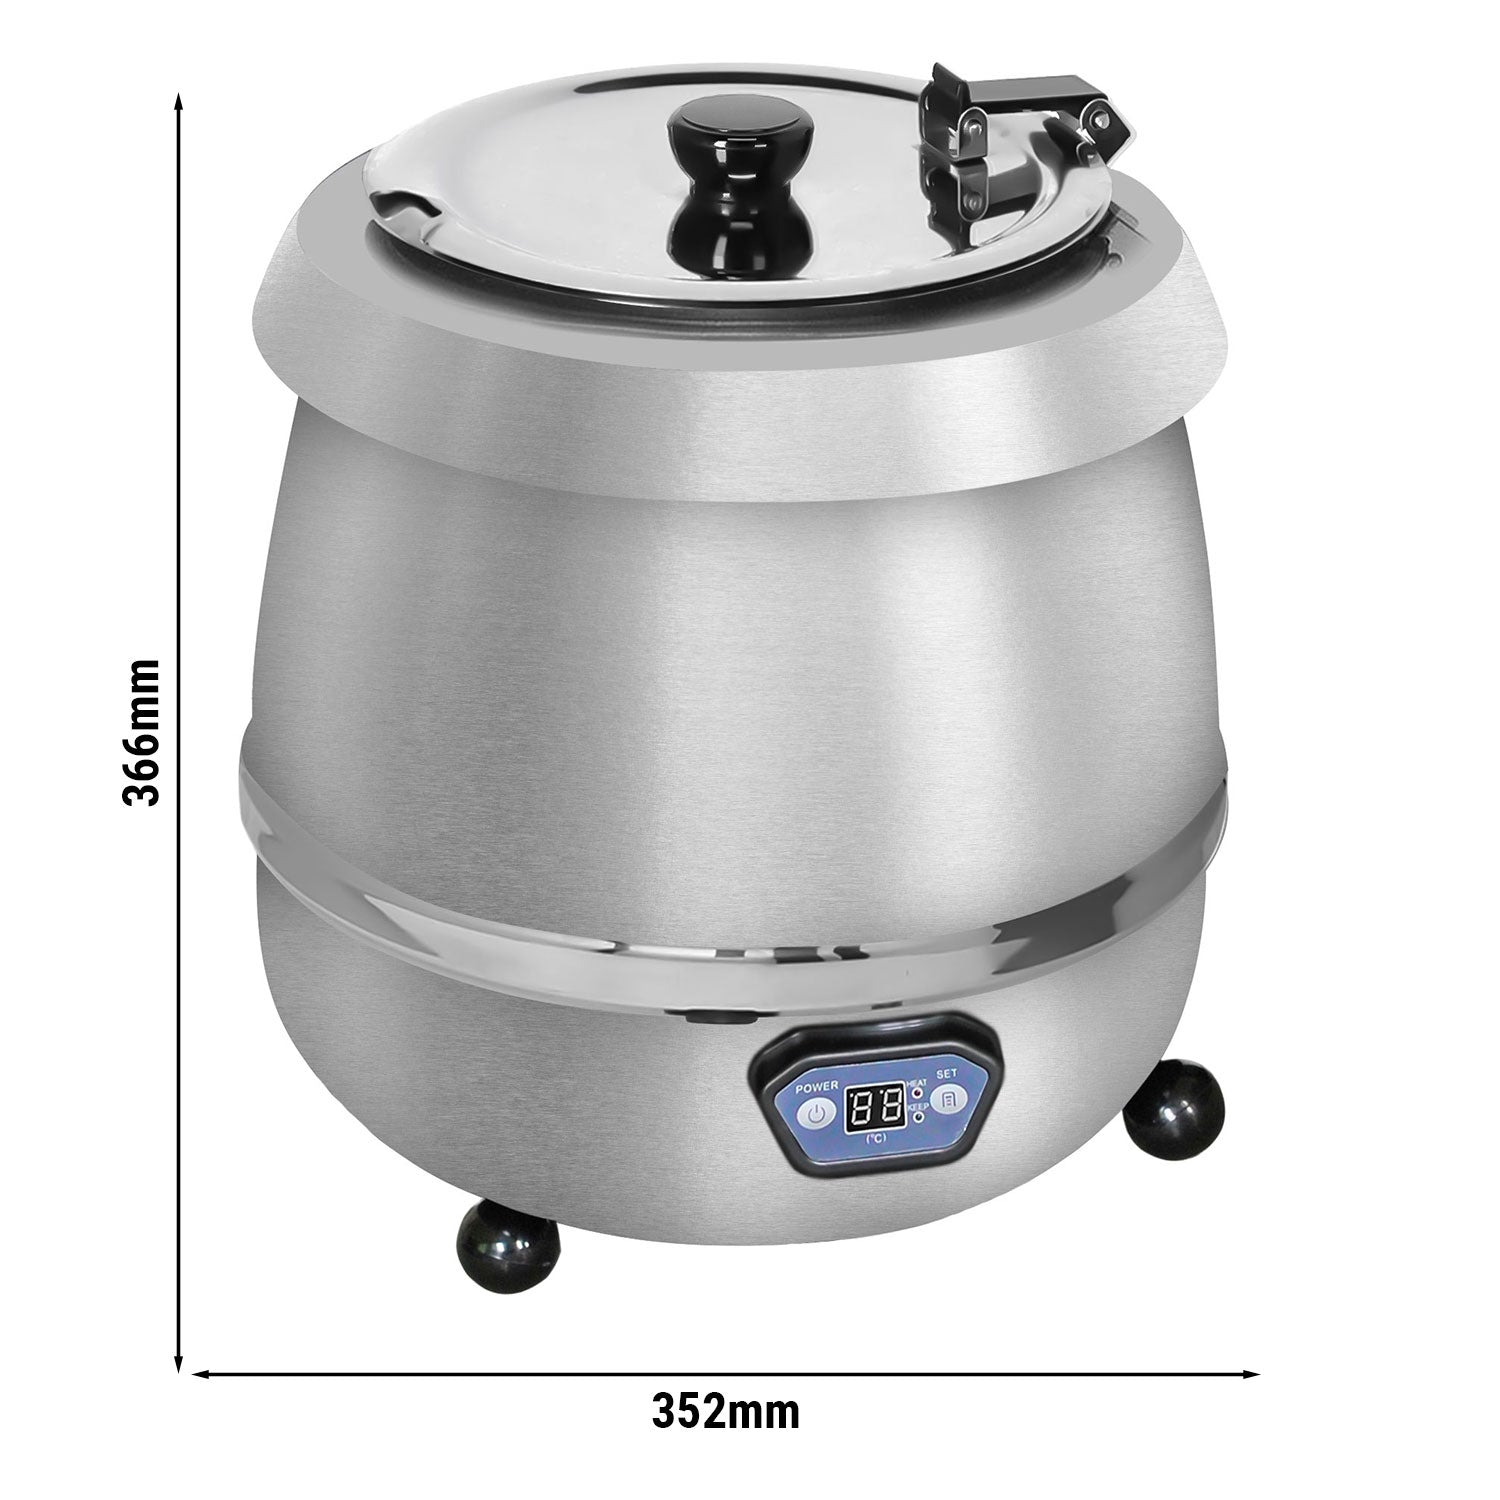 Suppevarmer - 9 liter - Digital - Rustfrit stål